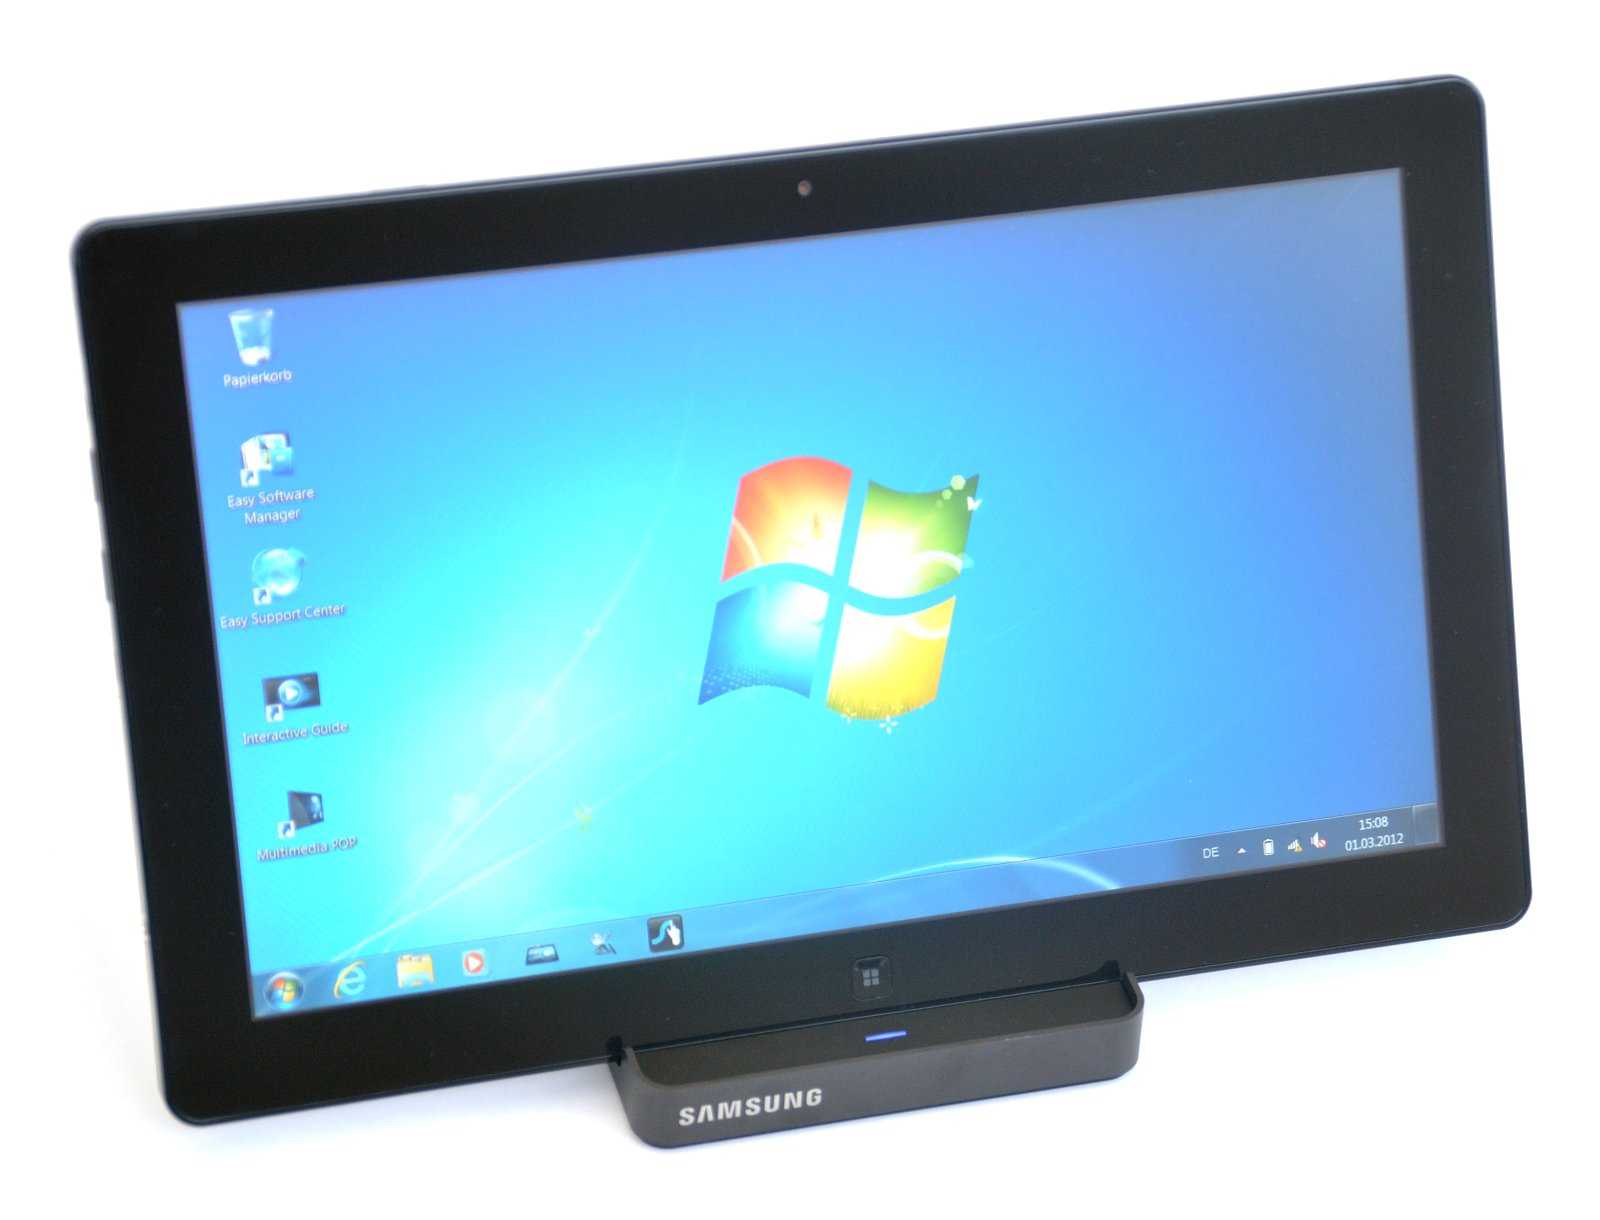 Samsung ativ smart pc pro xe700t1c-g01 128gb 3g dock - купить , скидки, цена, отзывы, обзор, характеристики - планшеты